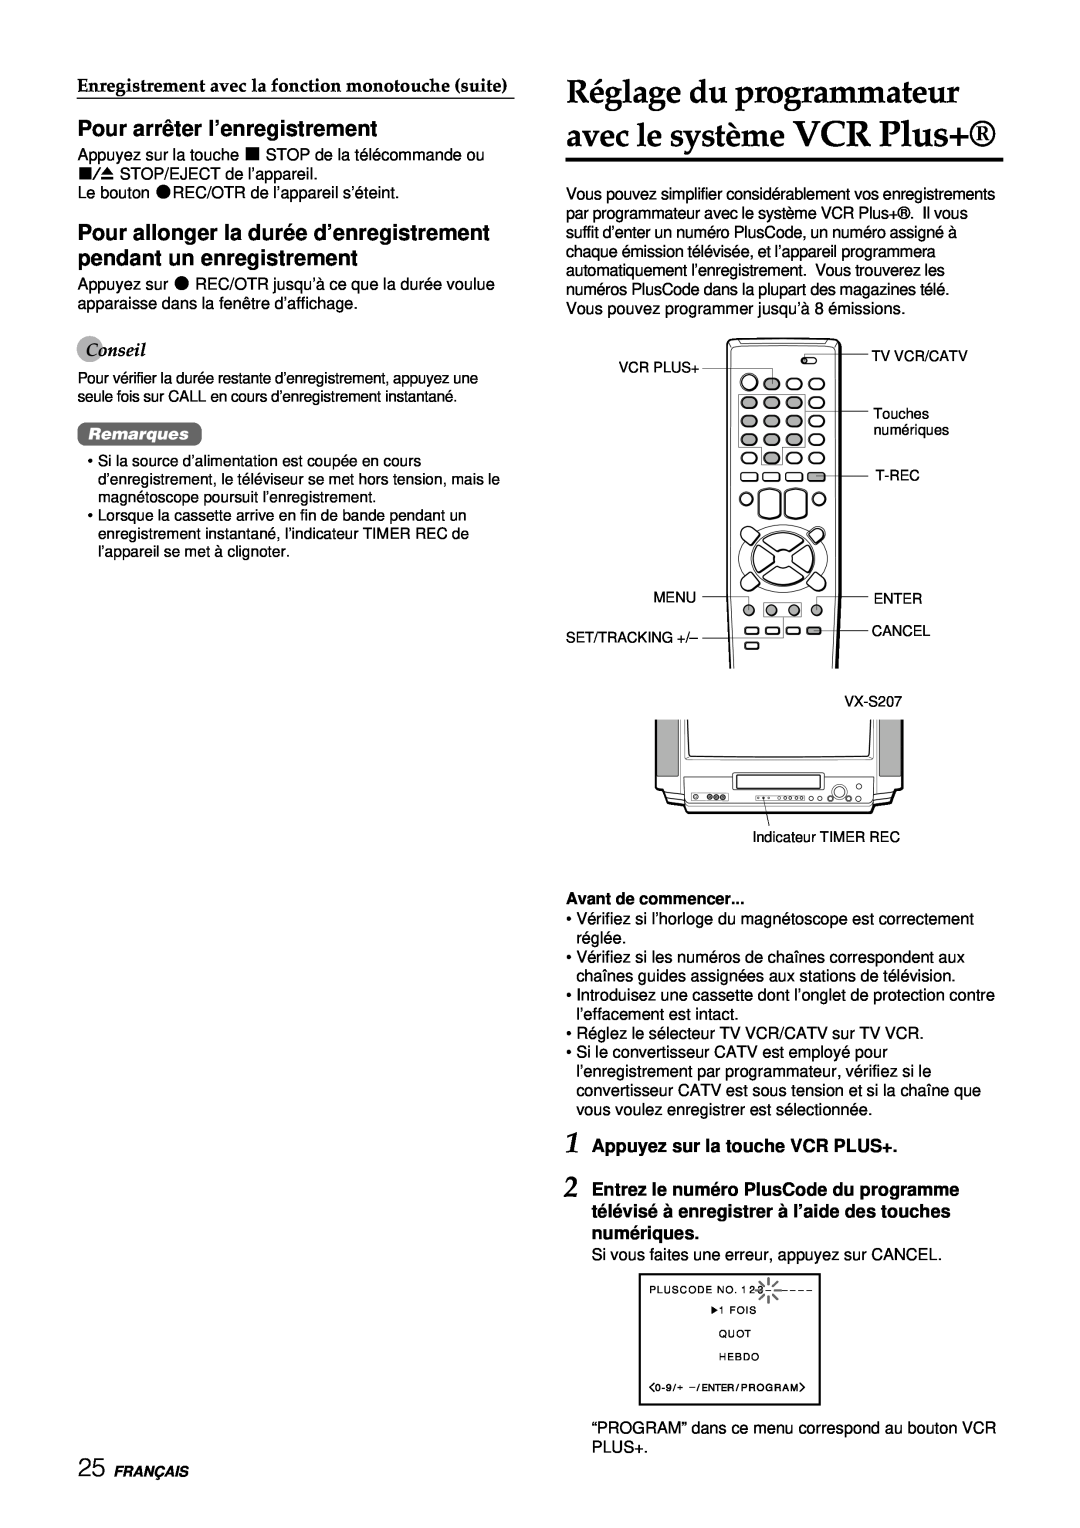 Aiwa VX-S137U manual Réglage du programmateur avec le système VCR Plus+, Pour arrê ter l’enregistrement, Conseil, Remarques 